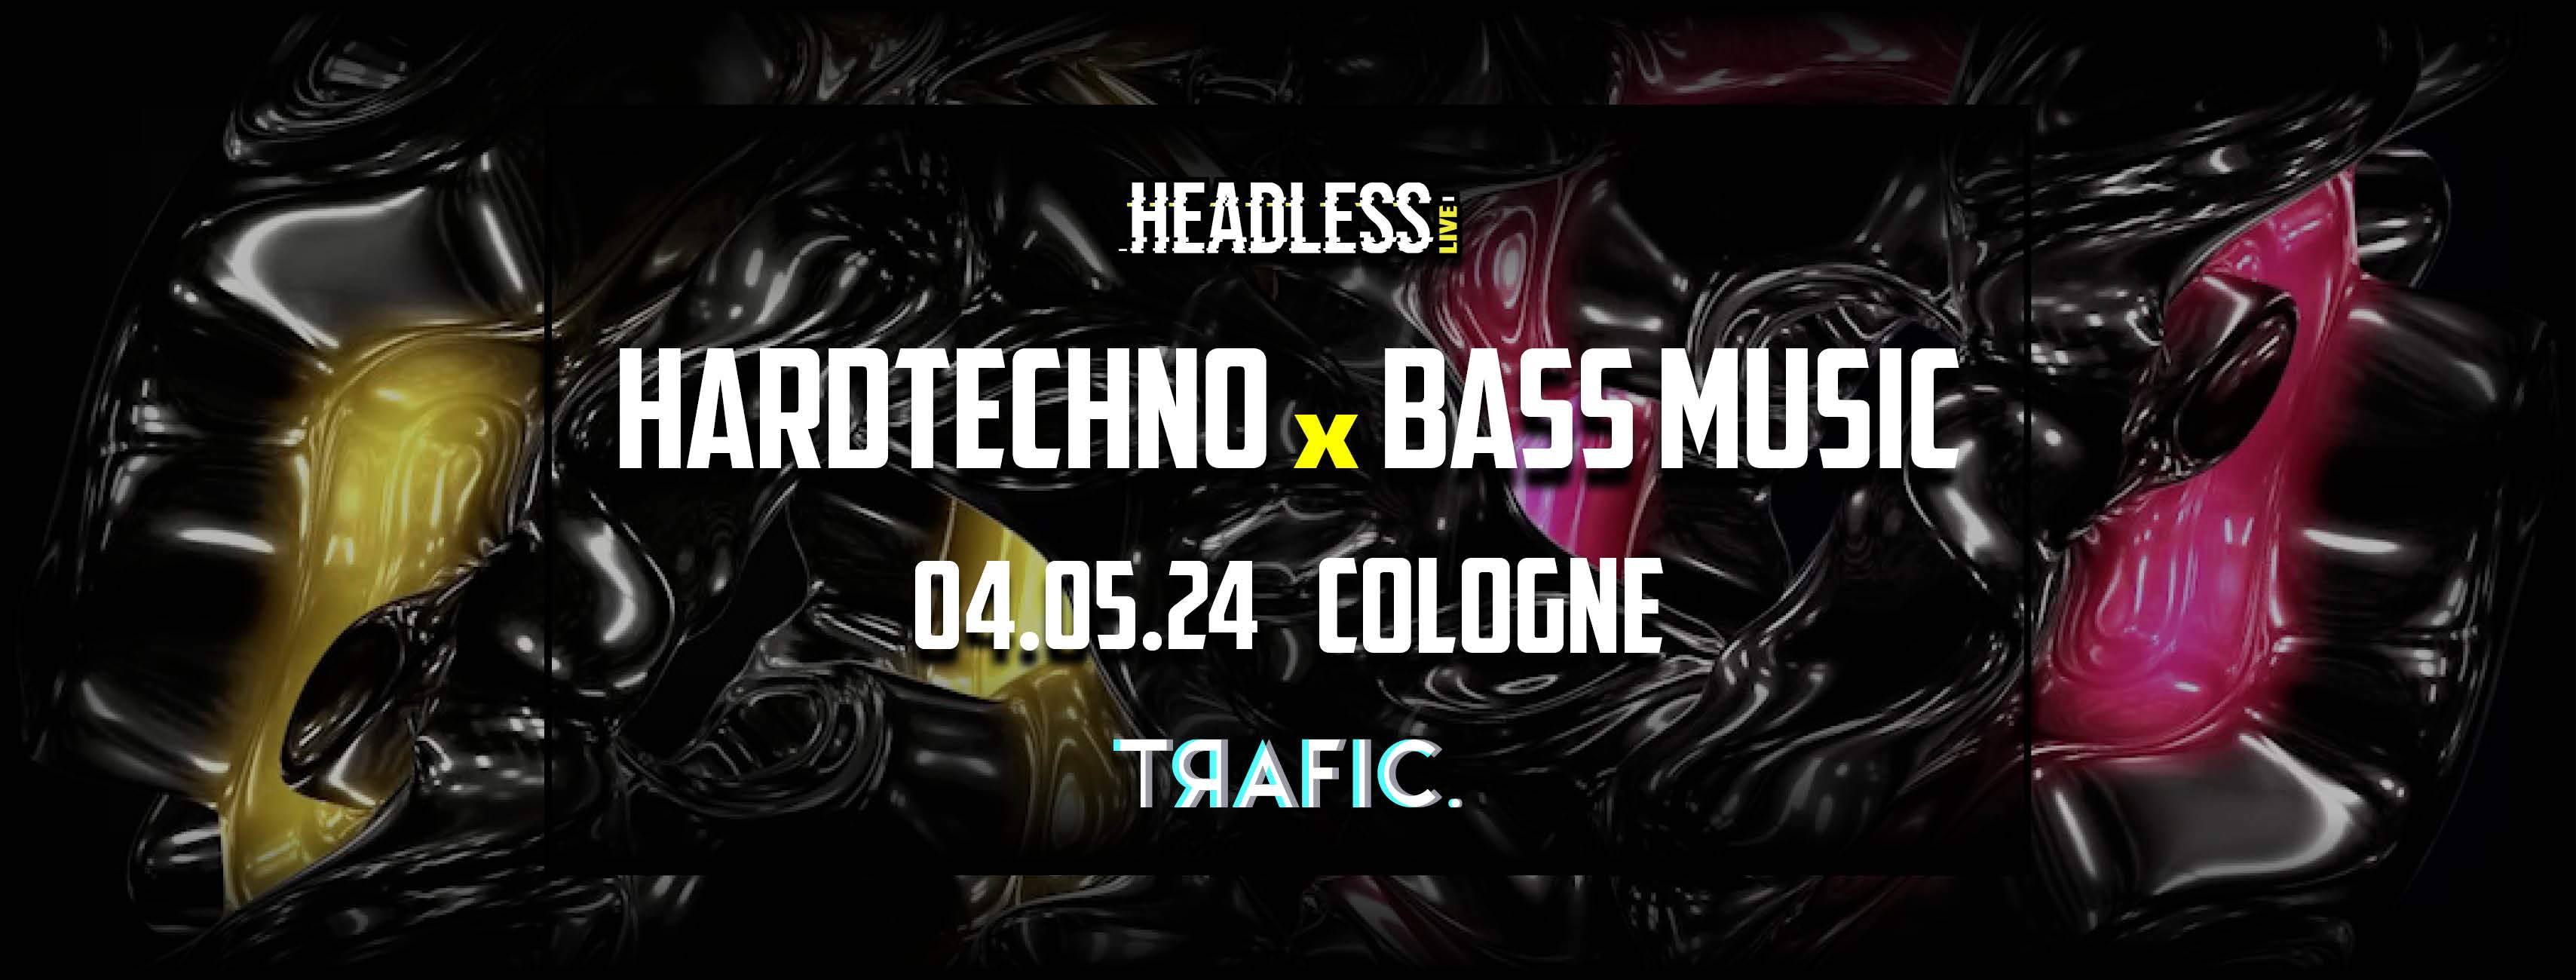 Headless - Trafic Madness Hard Techno X Bass Music - フライヤー表